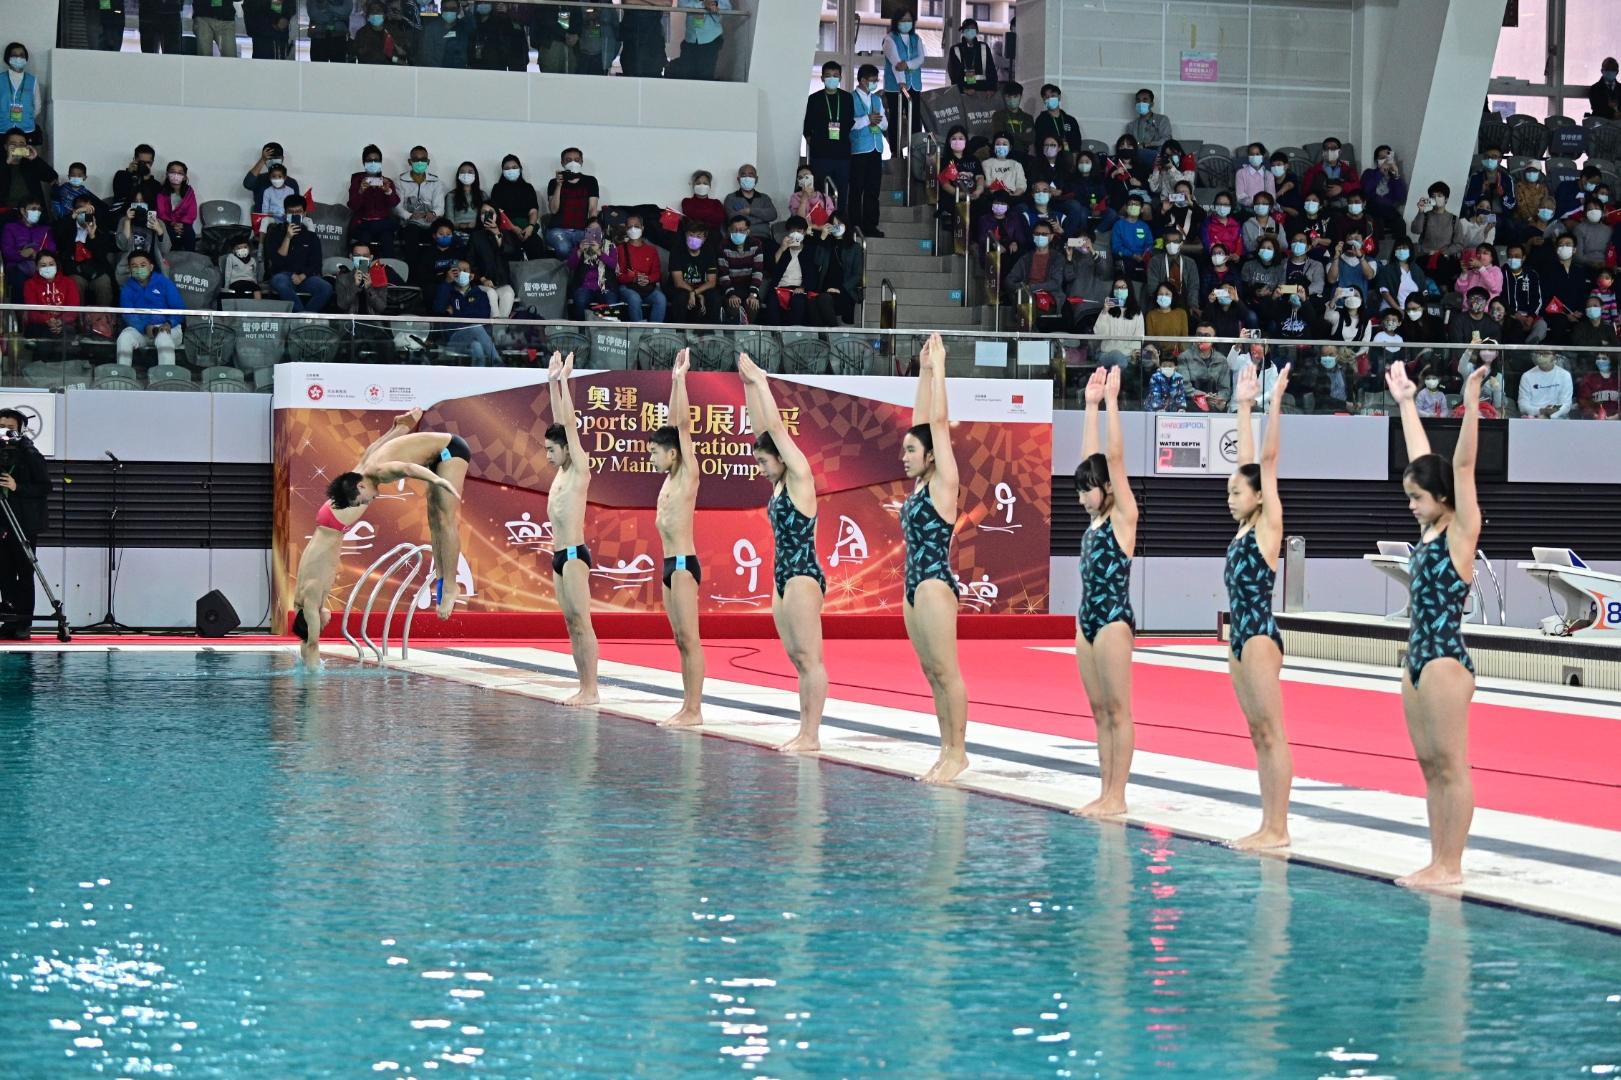 东京2020奥运会内地奥运健儿代表团今日（十二月四日）上午出席在维多利亚公园游泳池举行的「奥运健儿展风采」运动示范。图示内地跳水运动员王宗源（左一）和香港青少年运动员作跳水示范表演。